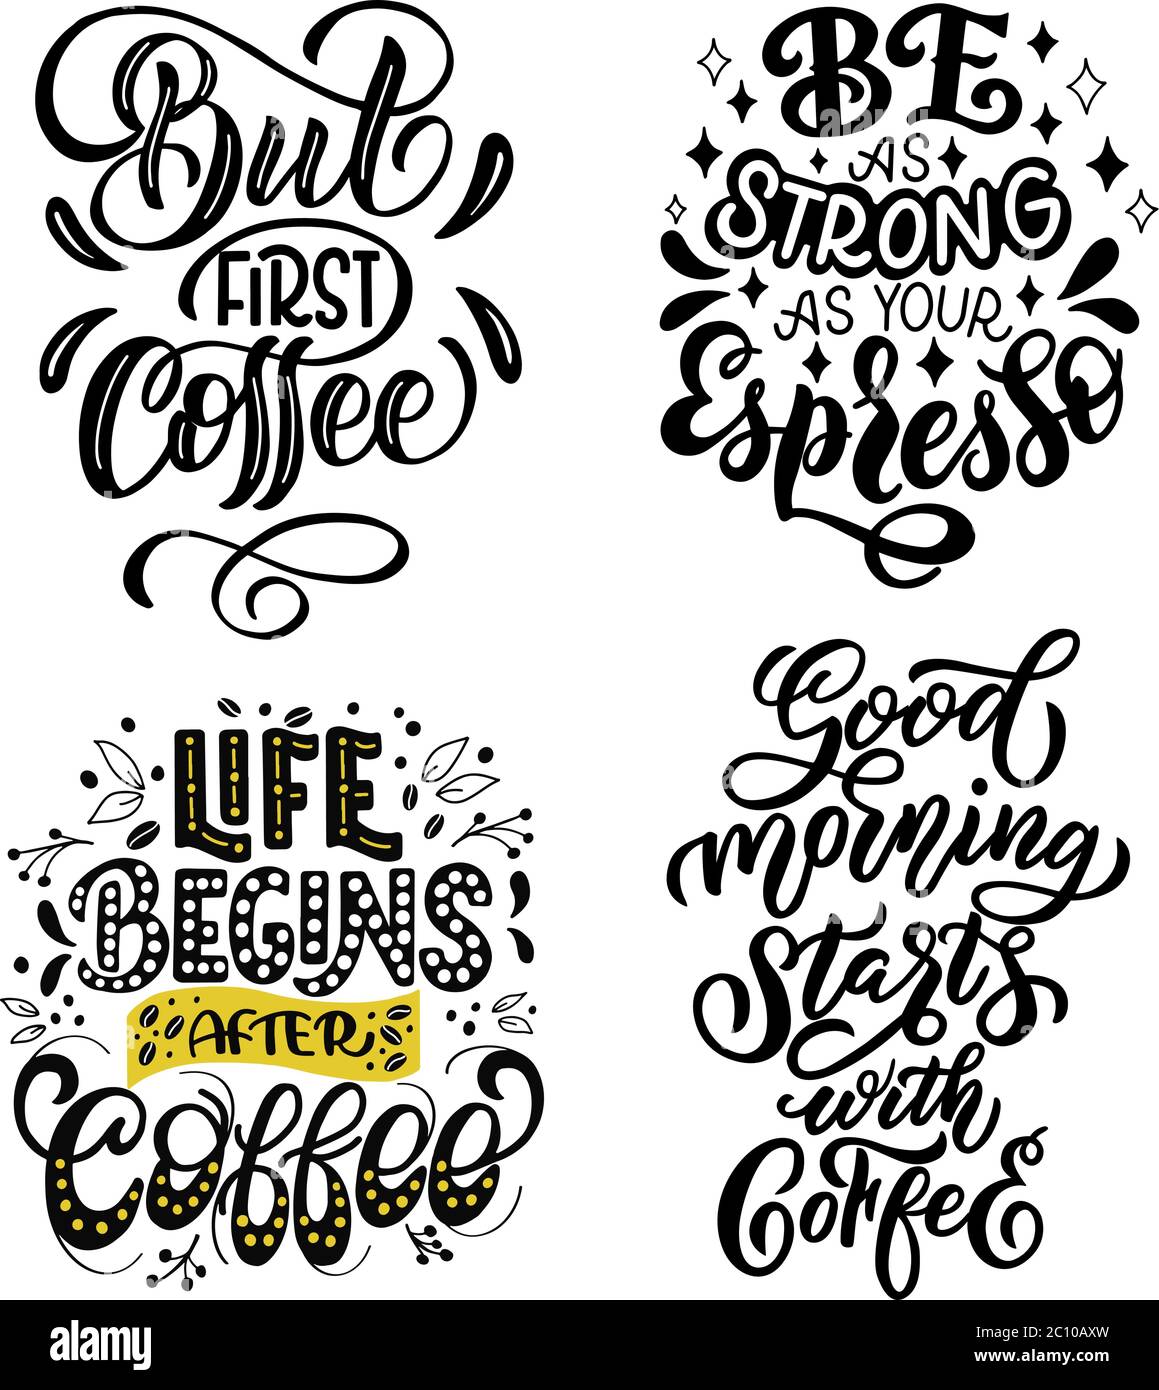 Eine Reihe motivierender Sätze über Kaffee. Vektorgrafiken auf weißem Hintergrund, für die Gestaltung von Postkarten, Plakaten, Bannern, Drucken für T-Shirts Stock Vektor